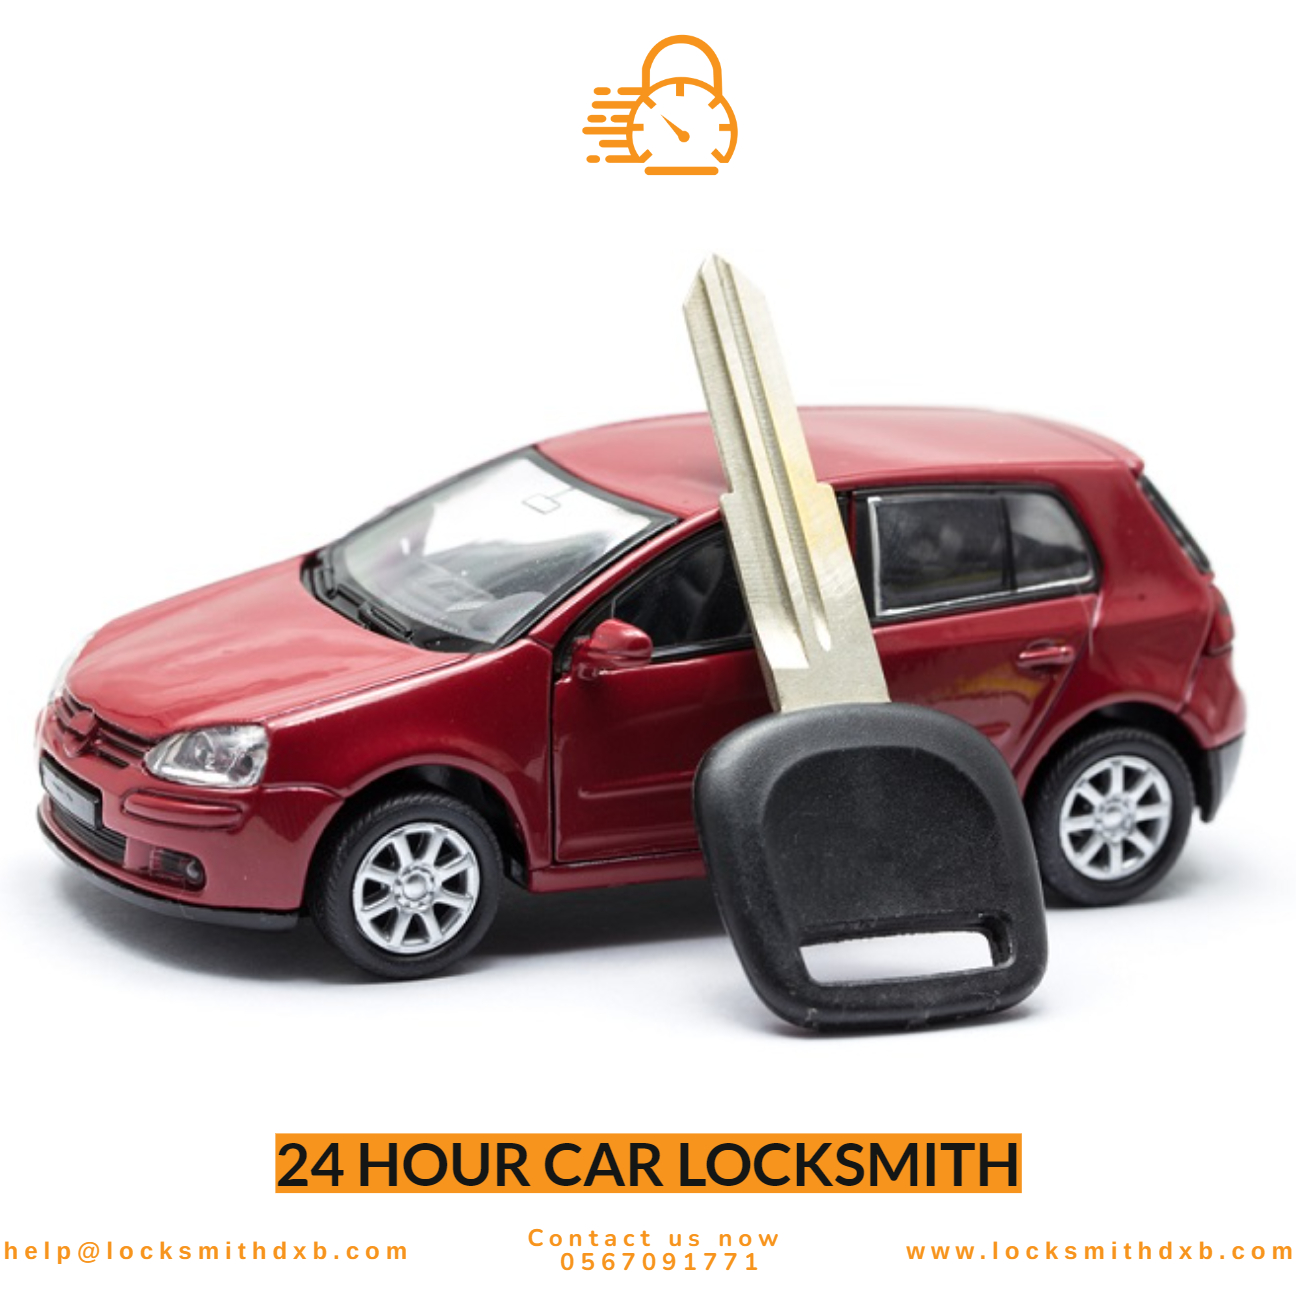 24 hour car locksmith